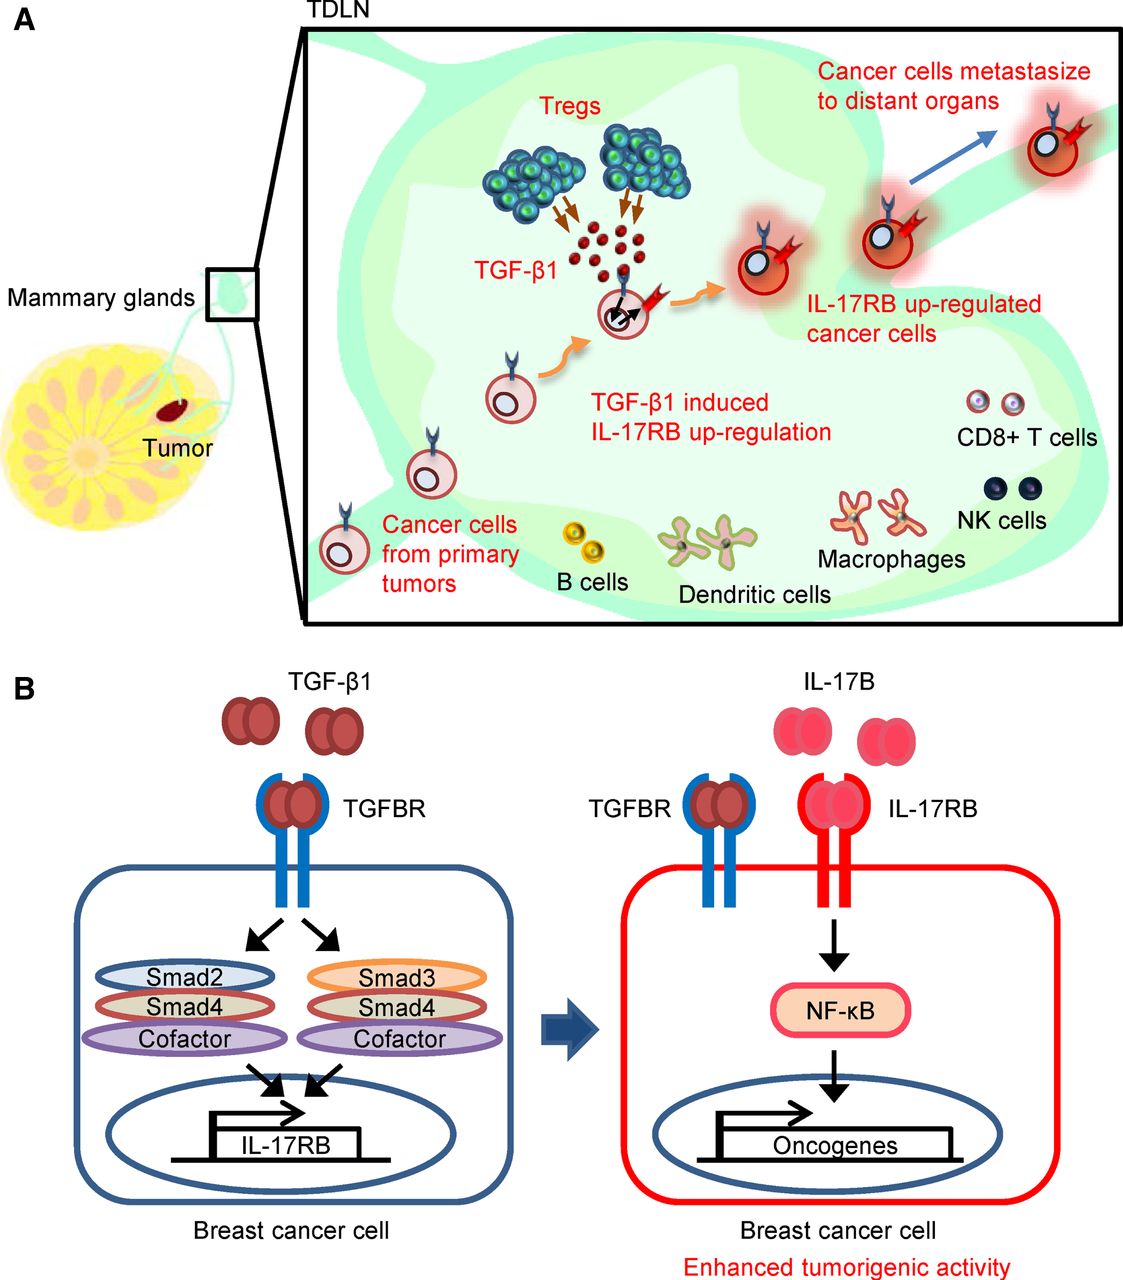 Tregs 所分泌的 TGF-β1 活化長乳癌細胞內 IL-17RB 基因，進而增加乳癌細胞的惡化